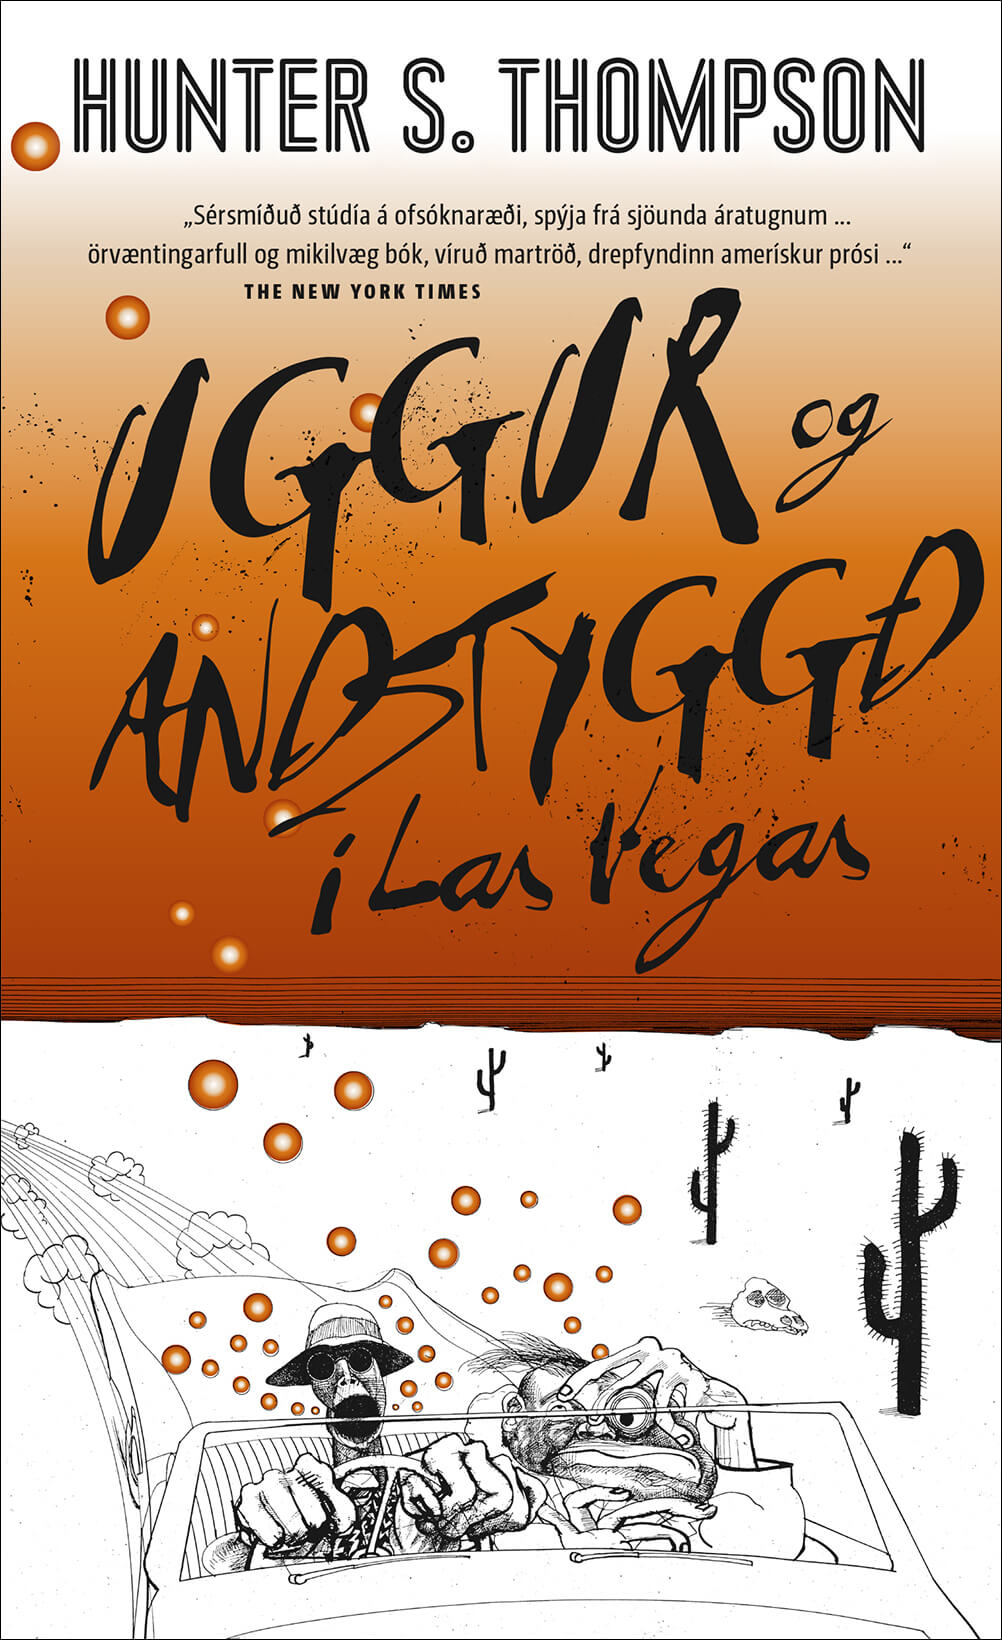 Uggur og andstyggð í Las Vegas